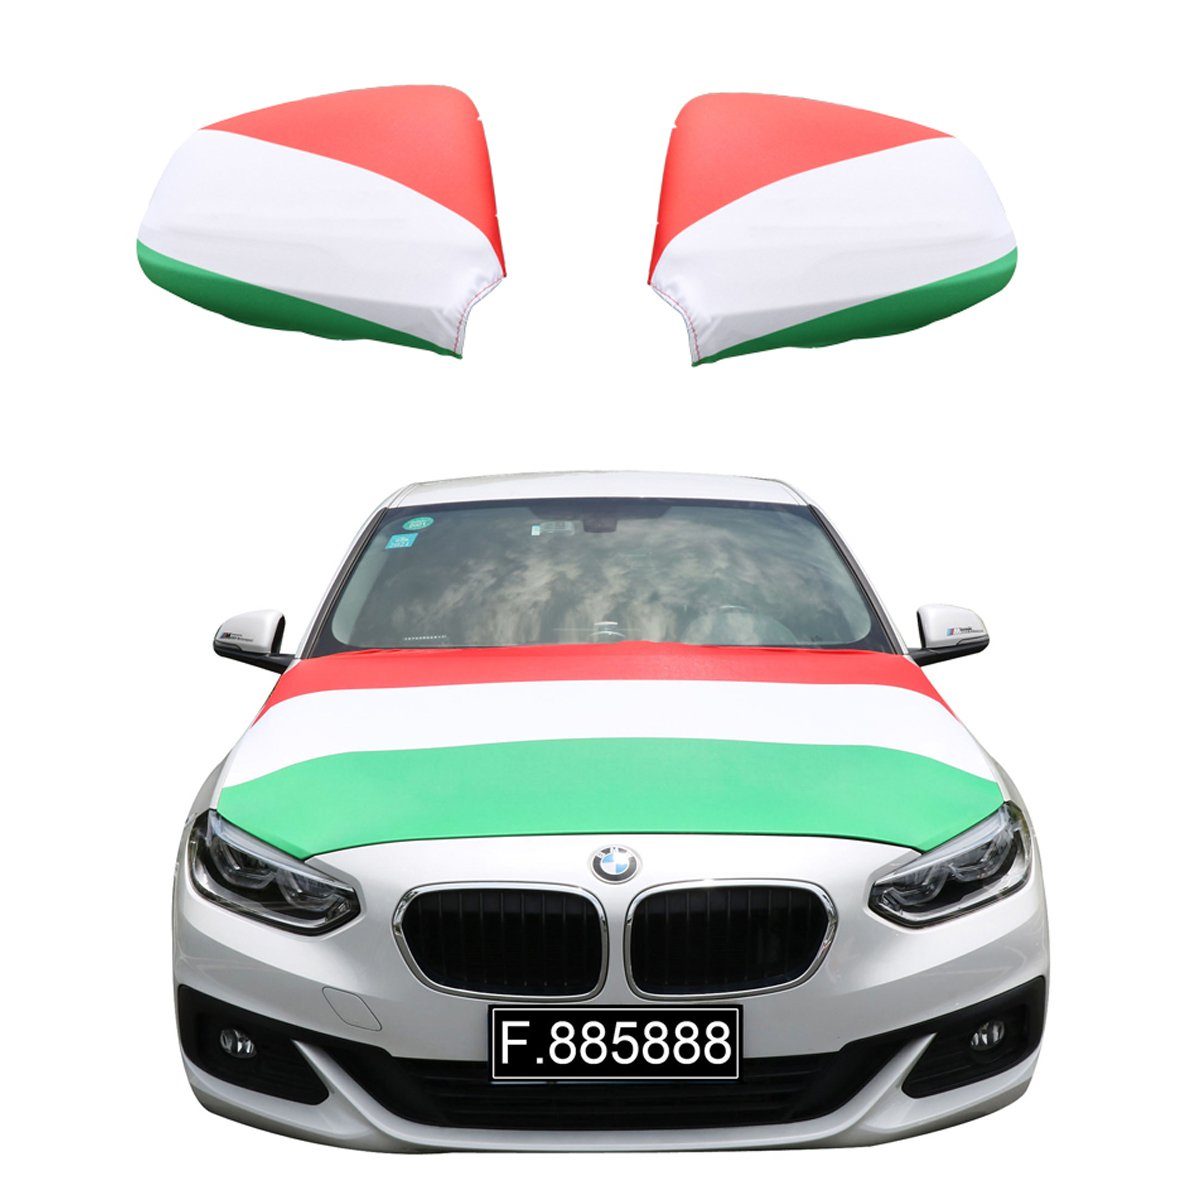 Sonia Originelli Fahne Fanset "Ungarn" Hungary Motorhaube Außenspiegel Flagge, für alle gängigen PKW Modelle, Motorhauben Flagge: ca. 115 x 150cm